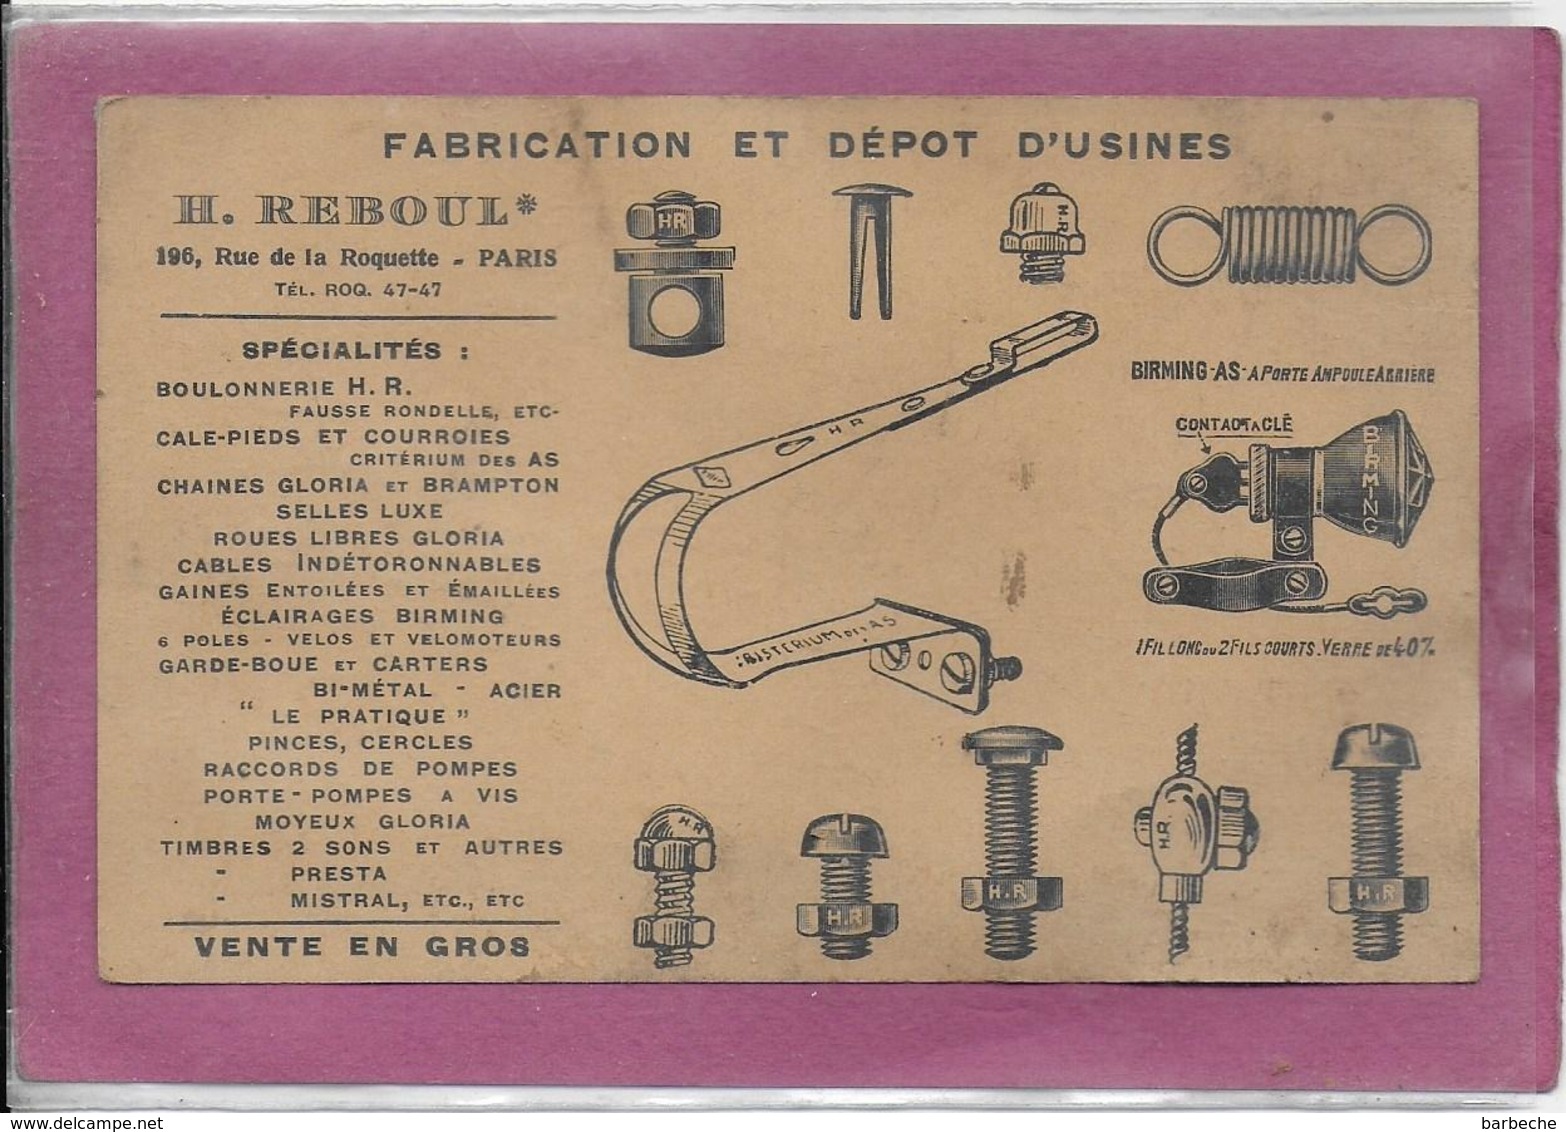 Fabrication Et Dépot D' Usine  H. REBOUL  196, Rue De La Roquette PARIS  Spécialités  Boulonnerie ... - Material Und Zubehör